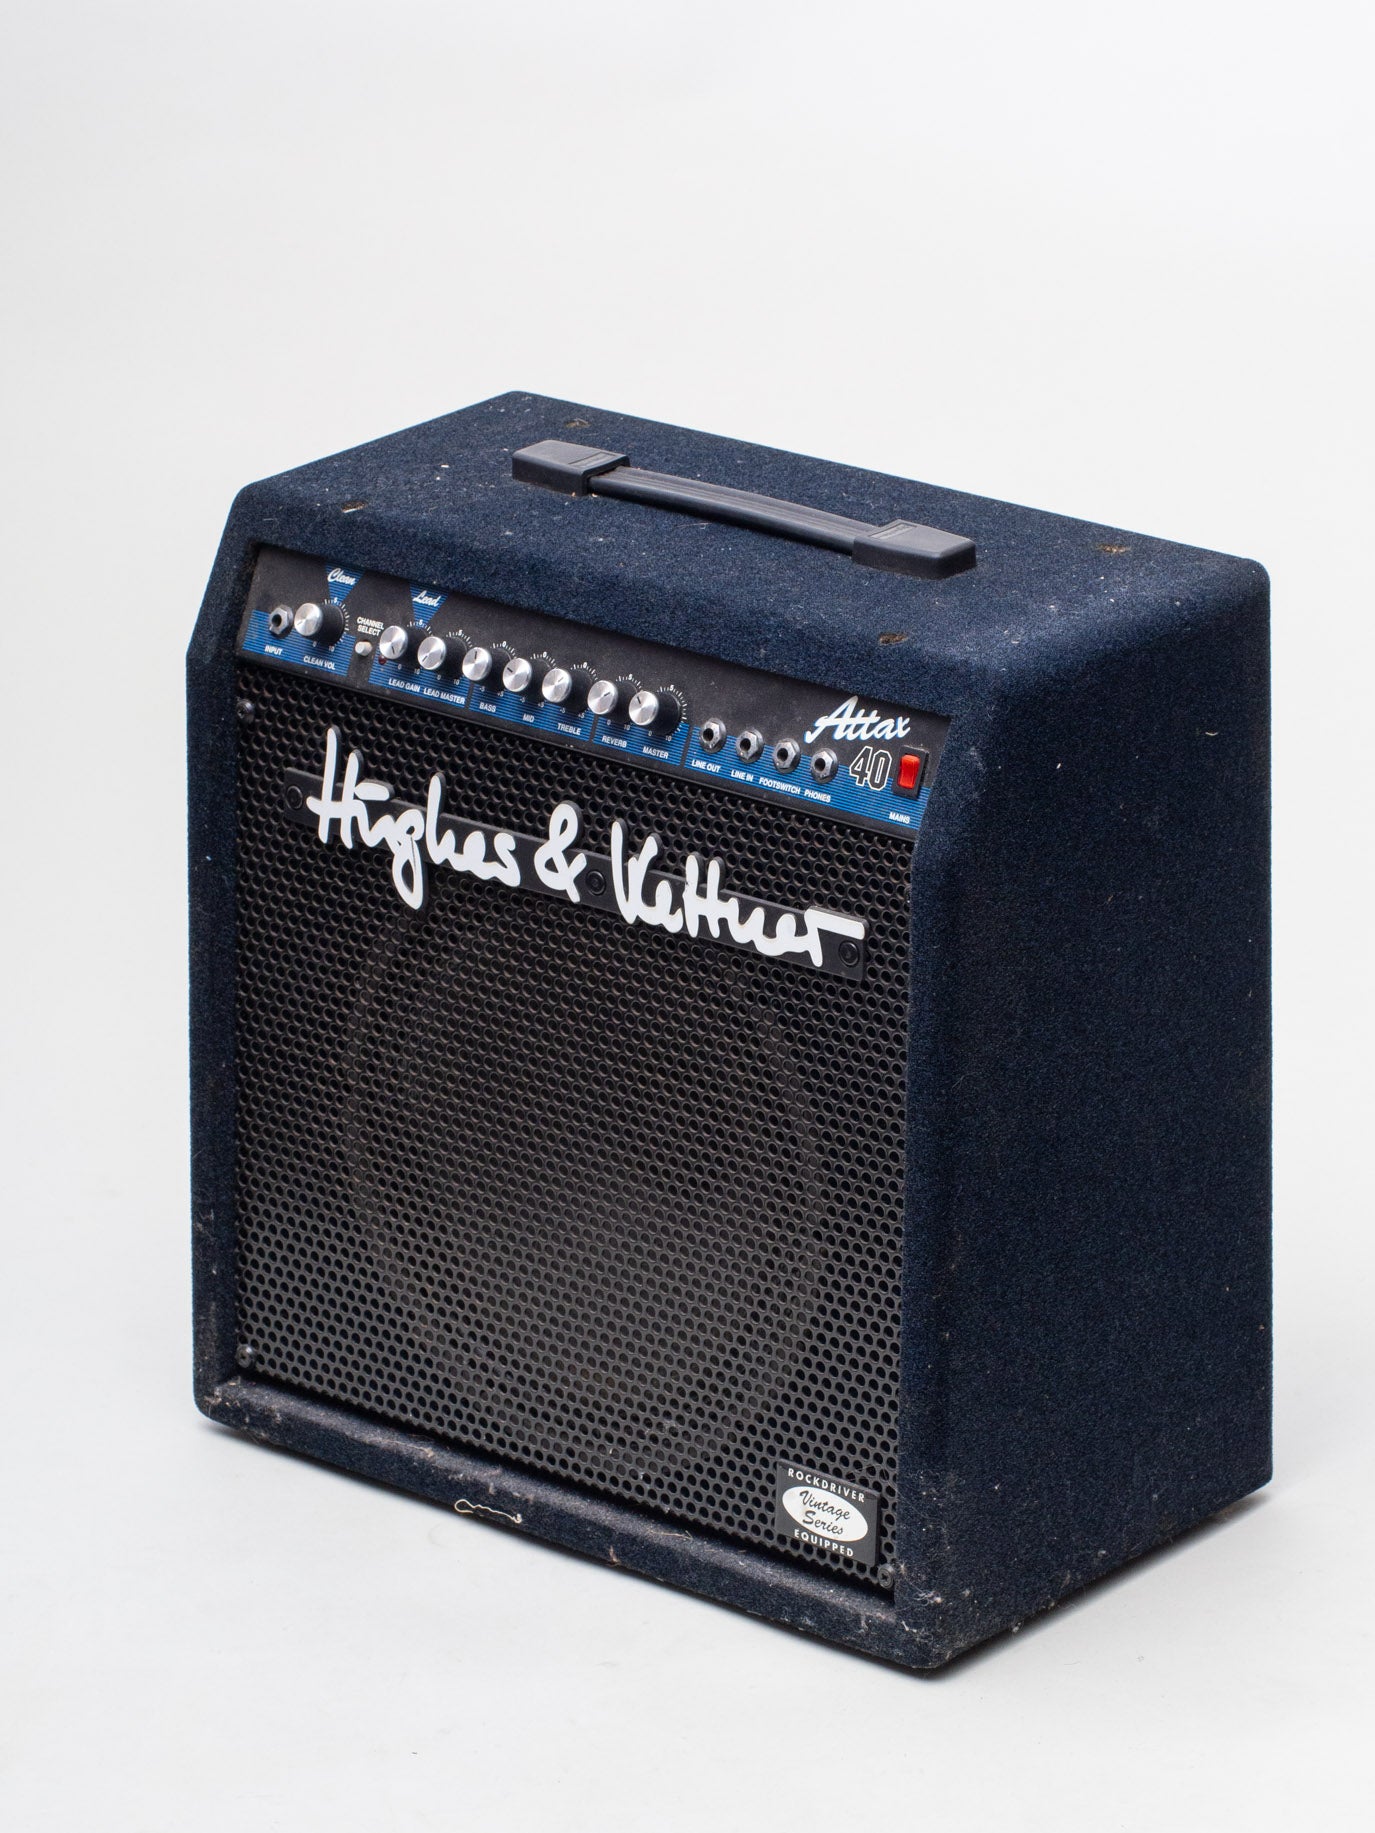 高評価定番Hughes & Kettner Attax 40 ギターアンプ 音出しOK 中古 オーディオ ヒュースアンドケトナー ドイツ製 コンボ